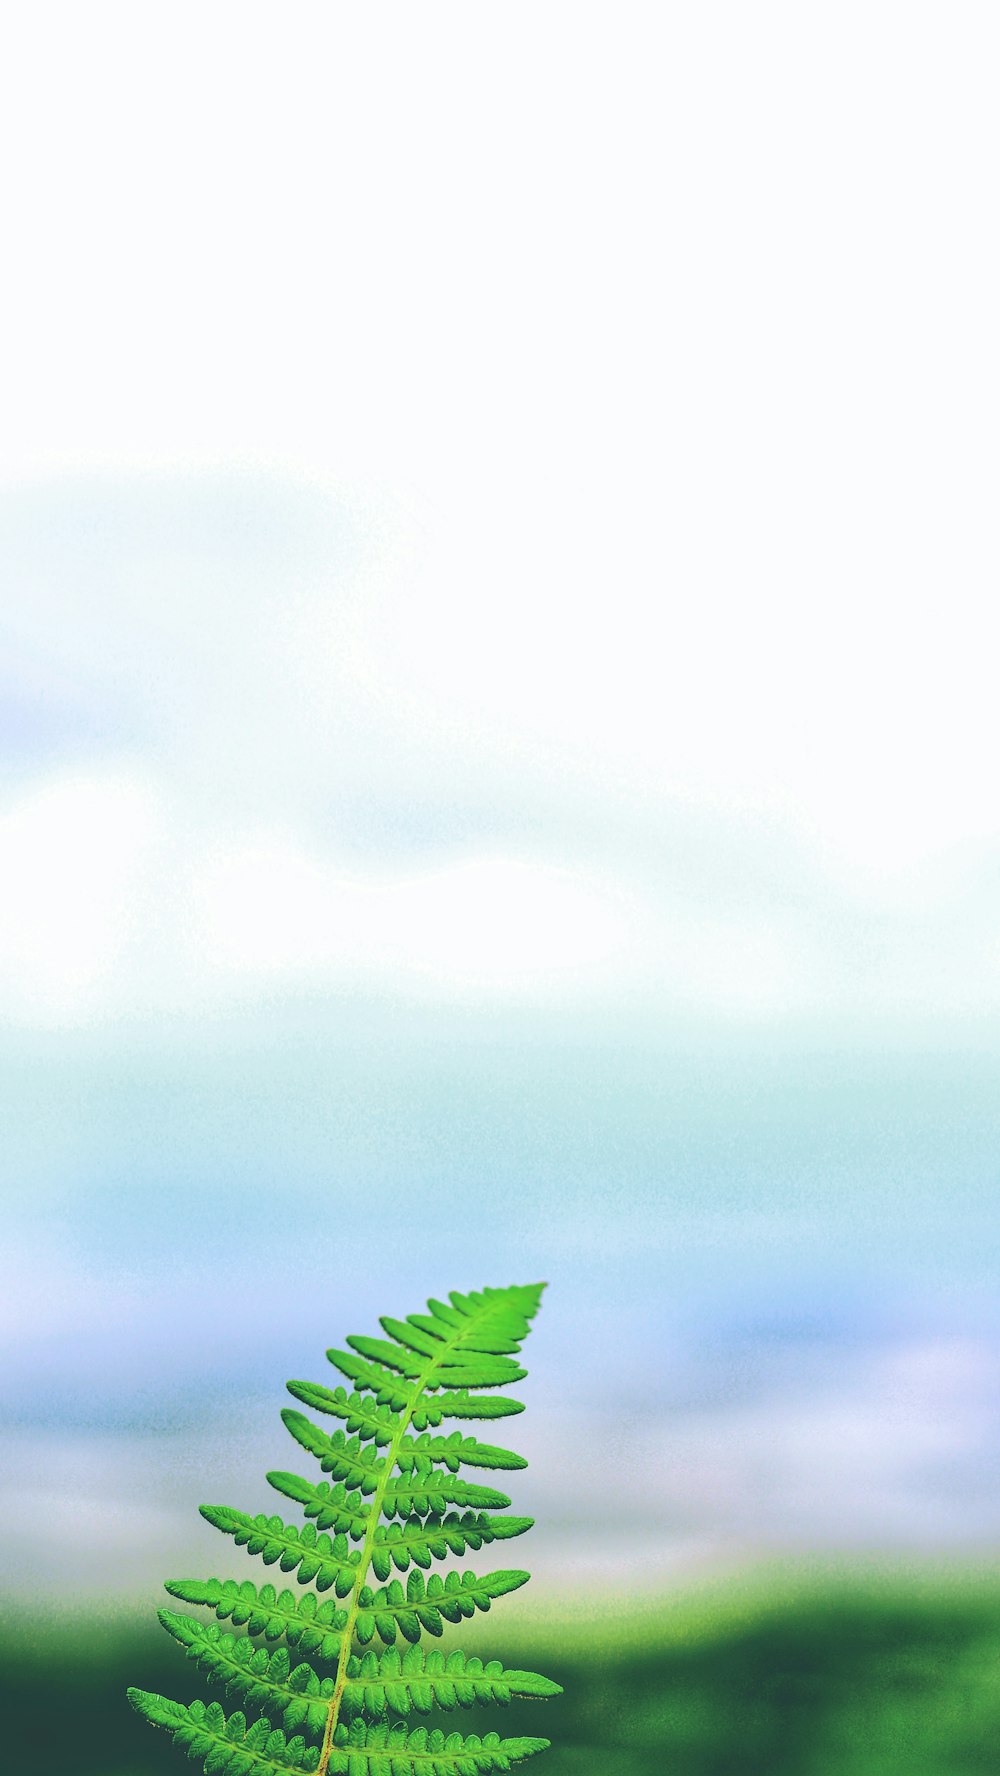 green fern plant under white skies